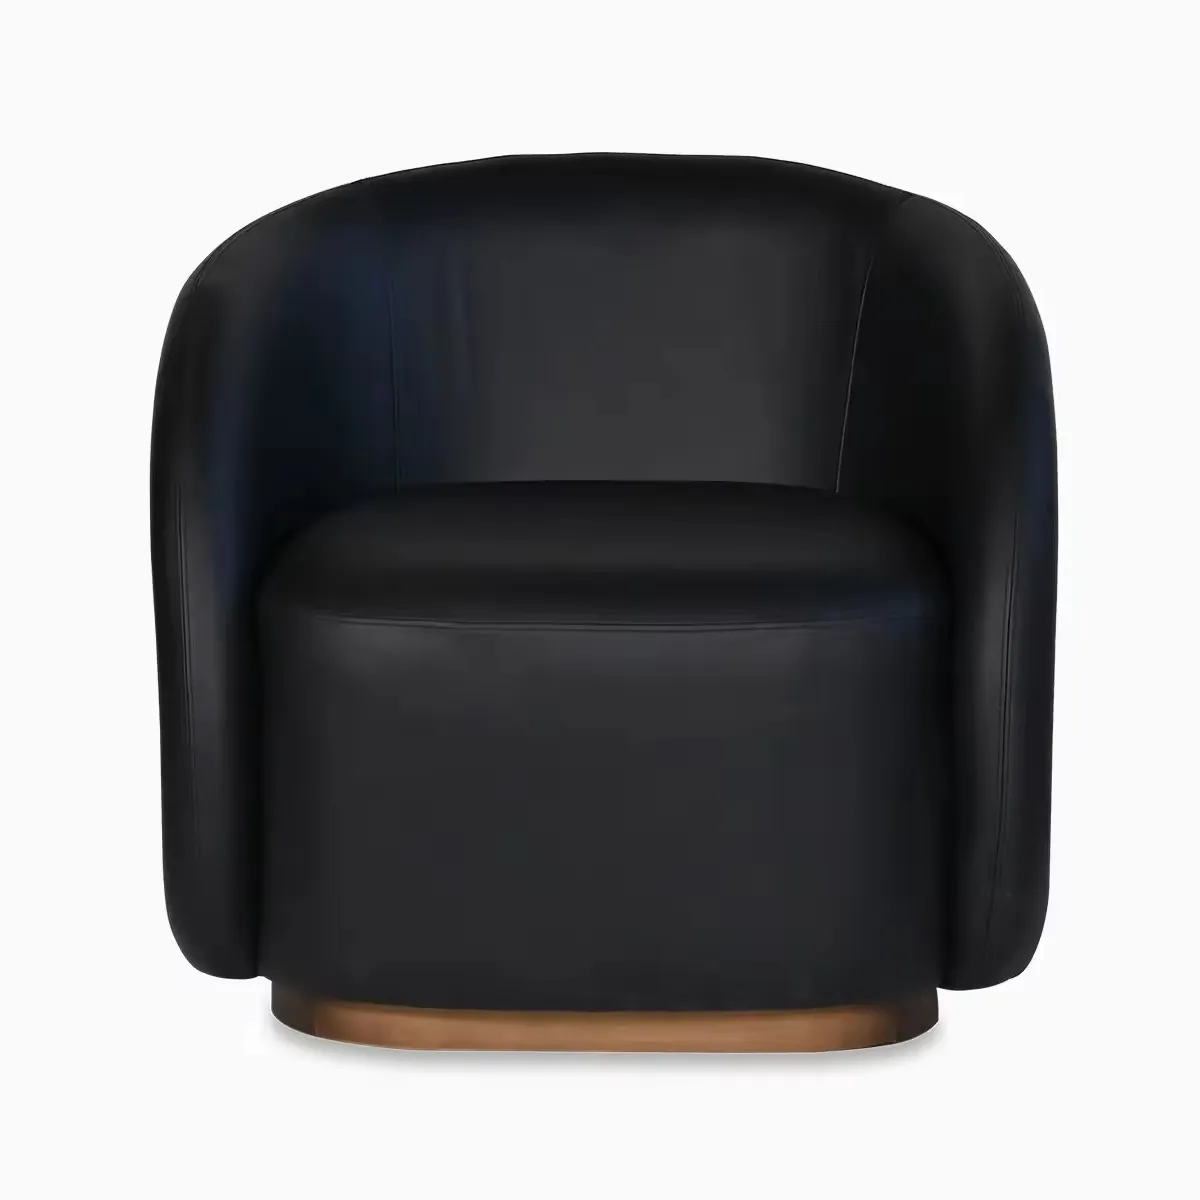 호텔 및 레스토랑 용 암 의자 가구 패브릭 가죽 의자 최고의 품질 편안한 좌석